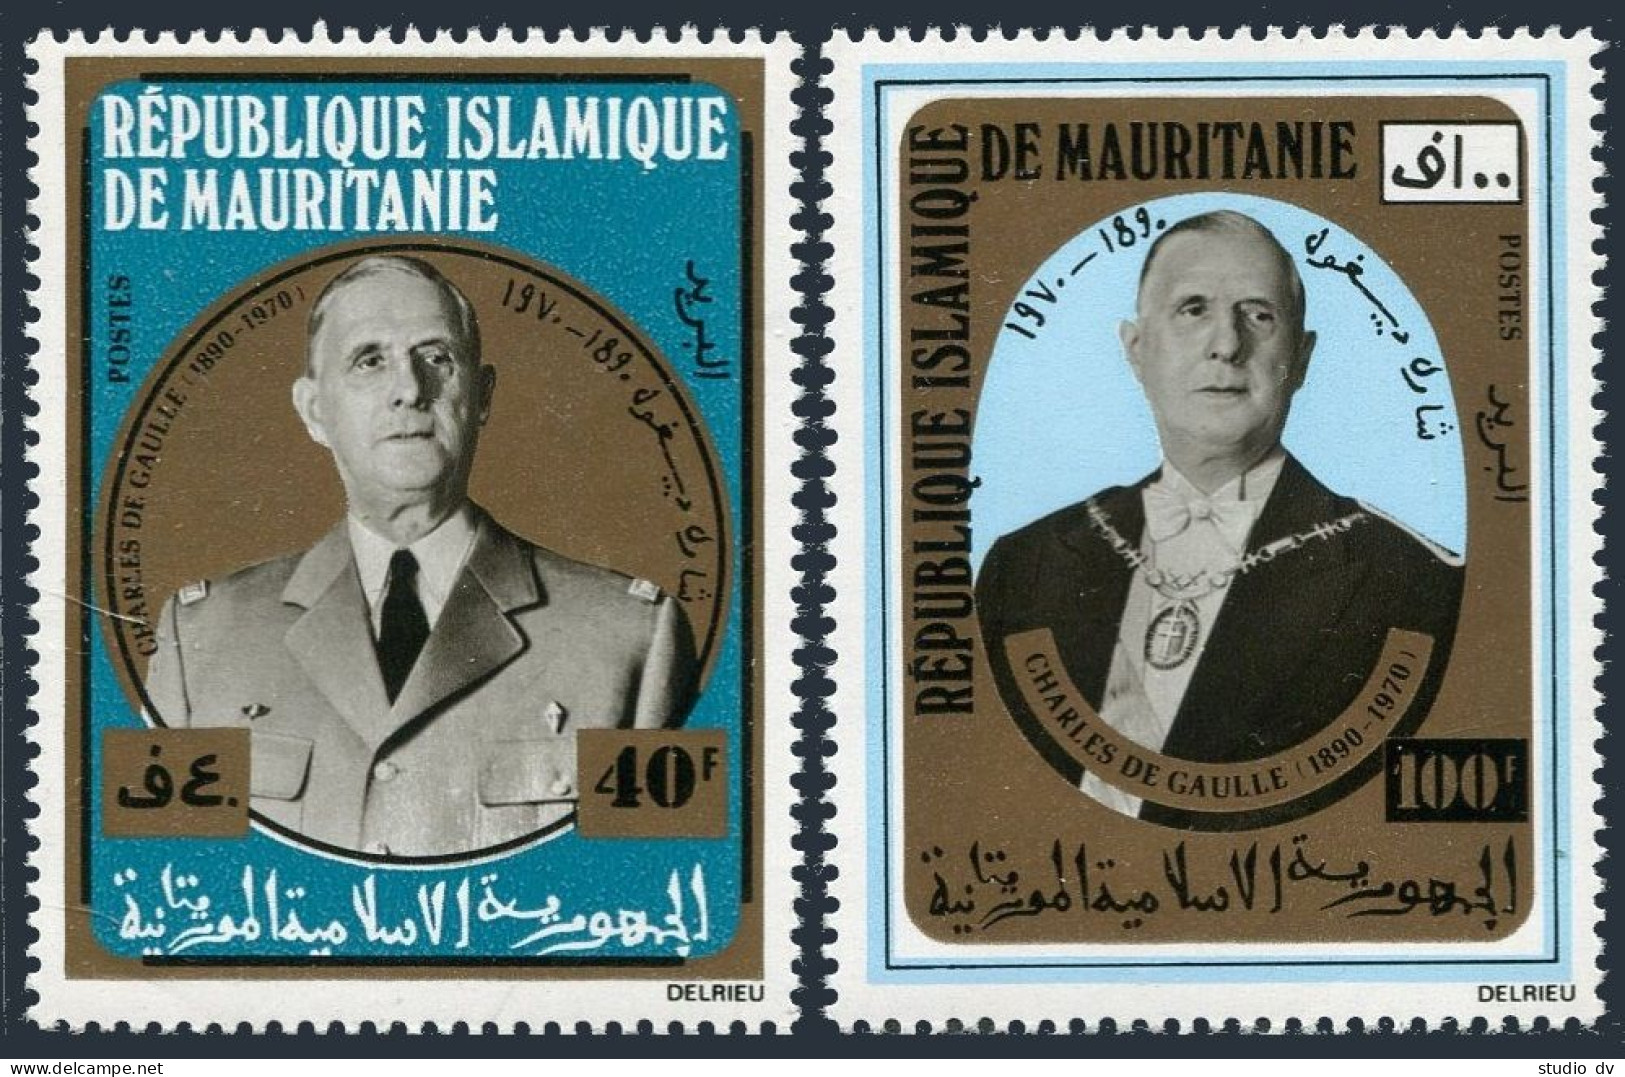 Mauritania 289-290,290a Sheet,MNH.Michel 418-419,Bl.9, Charles De Gaulle. - Mauritanie (1960-...)